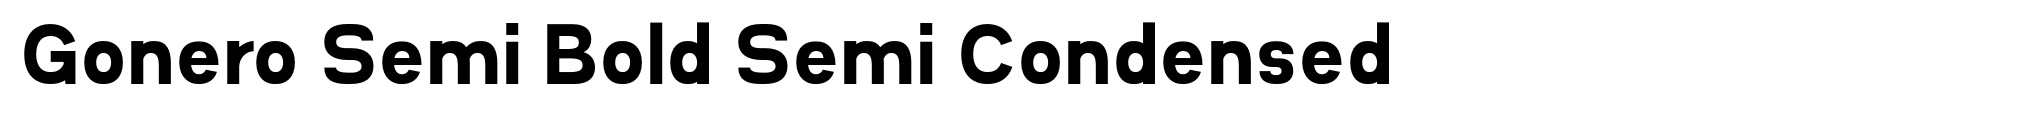 Gonero Semi Bold Semi Condensed image